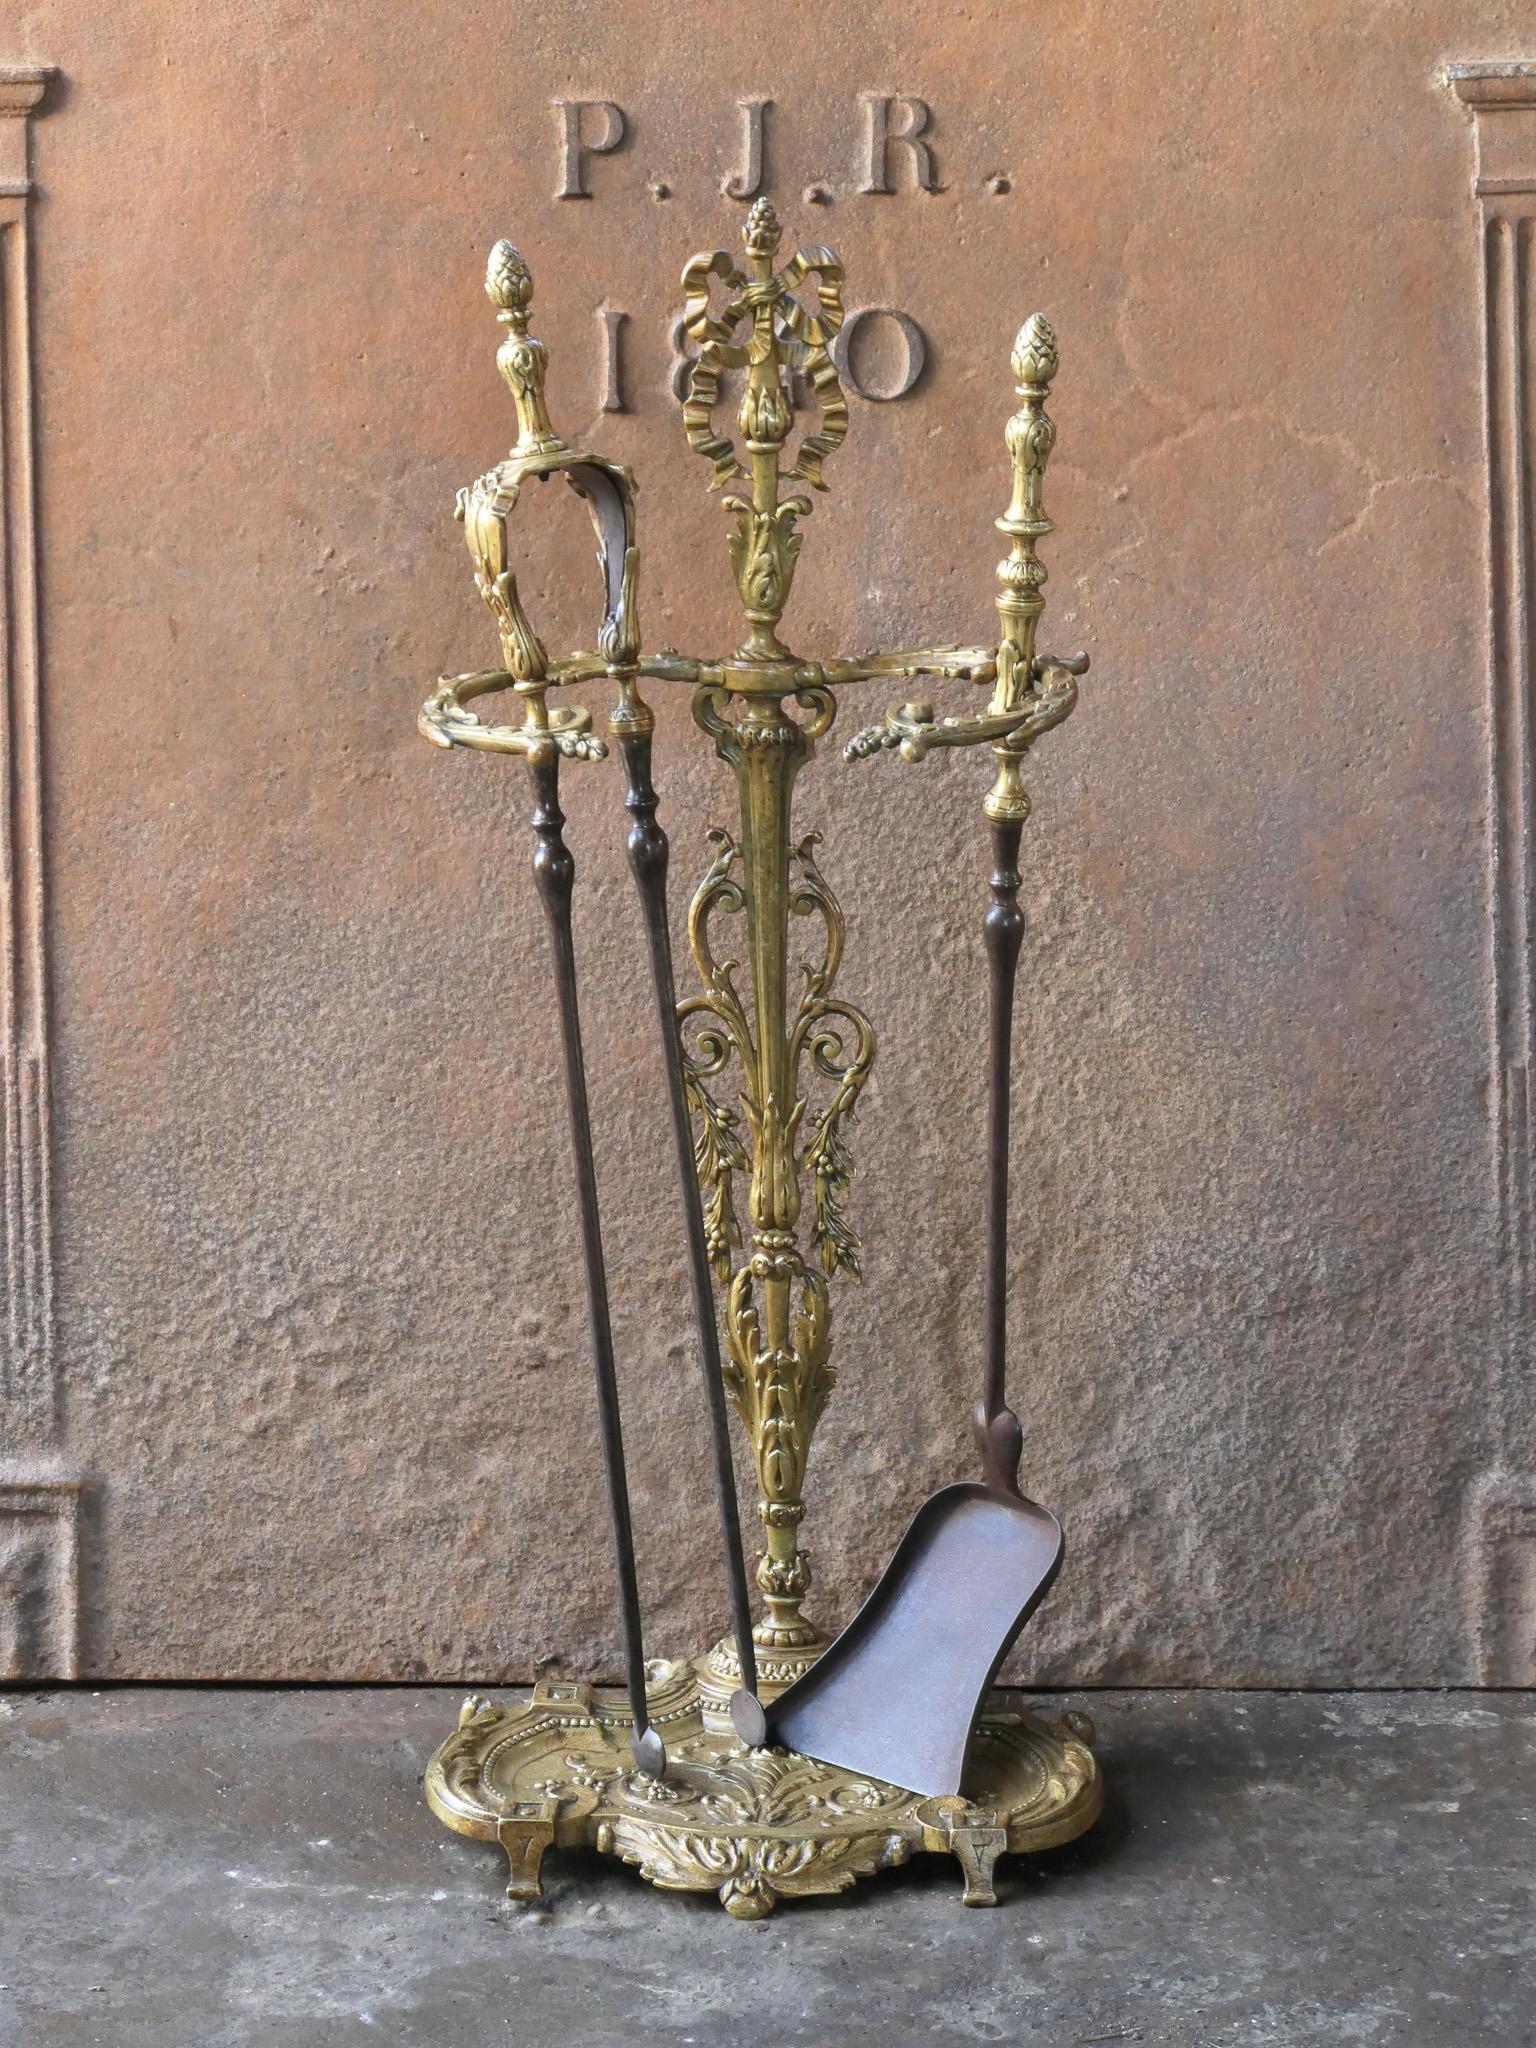 Ensemble d'outils de cheminée néoclassique français des XVIIIe et XIXe siècles, richement décoré. L'ensemble d'outils se compose d'une pince, d'une pelle et d'un support. Le support est en laiton et les outils en fer forgé avec décoration en laiton.